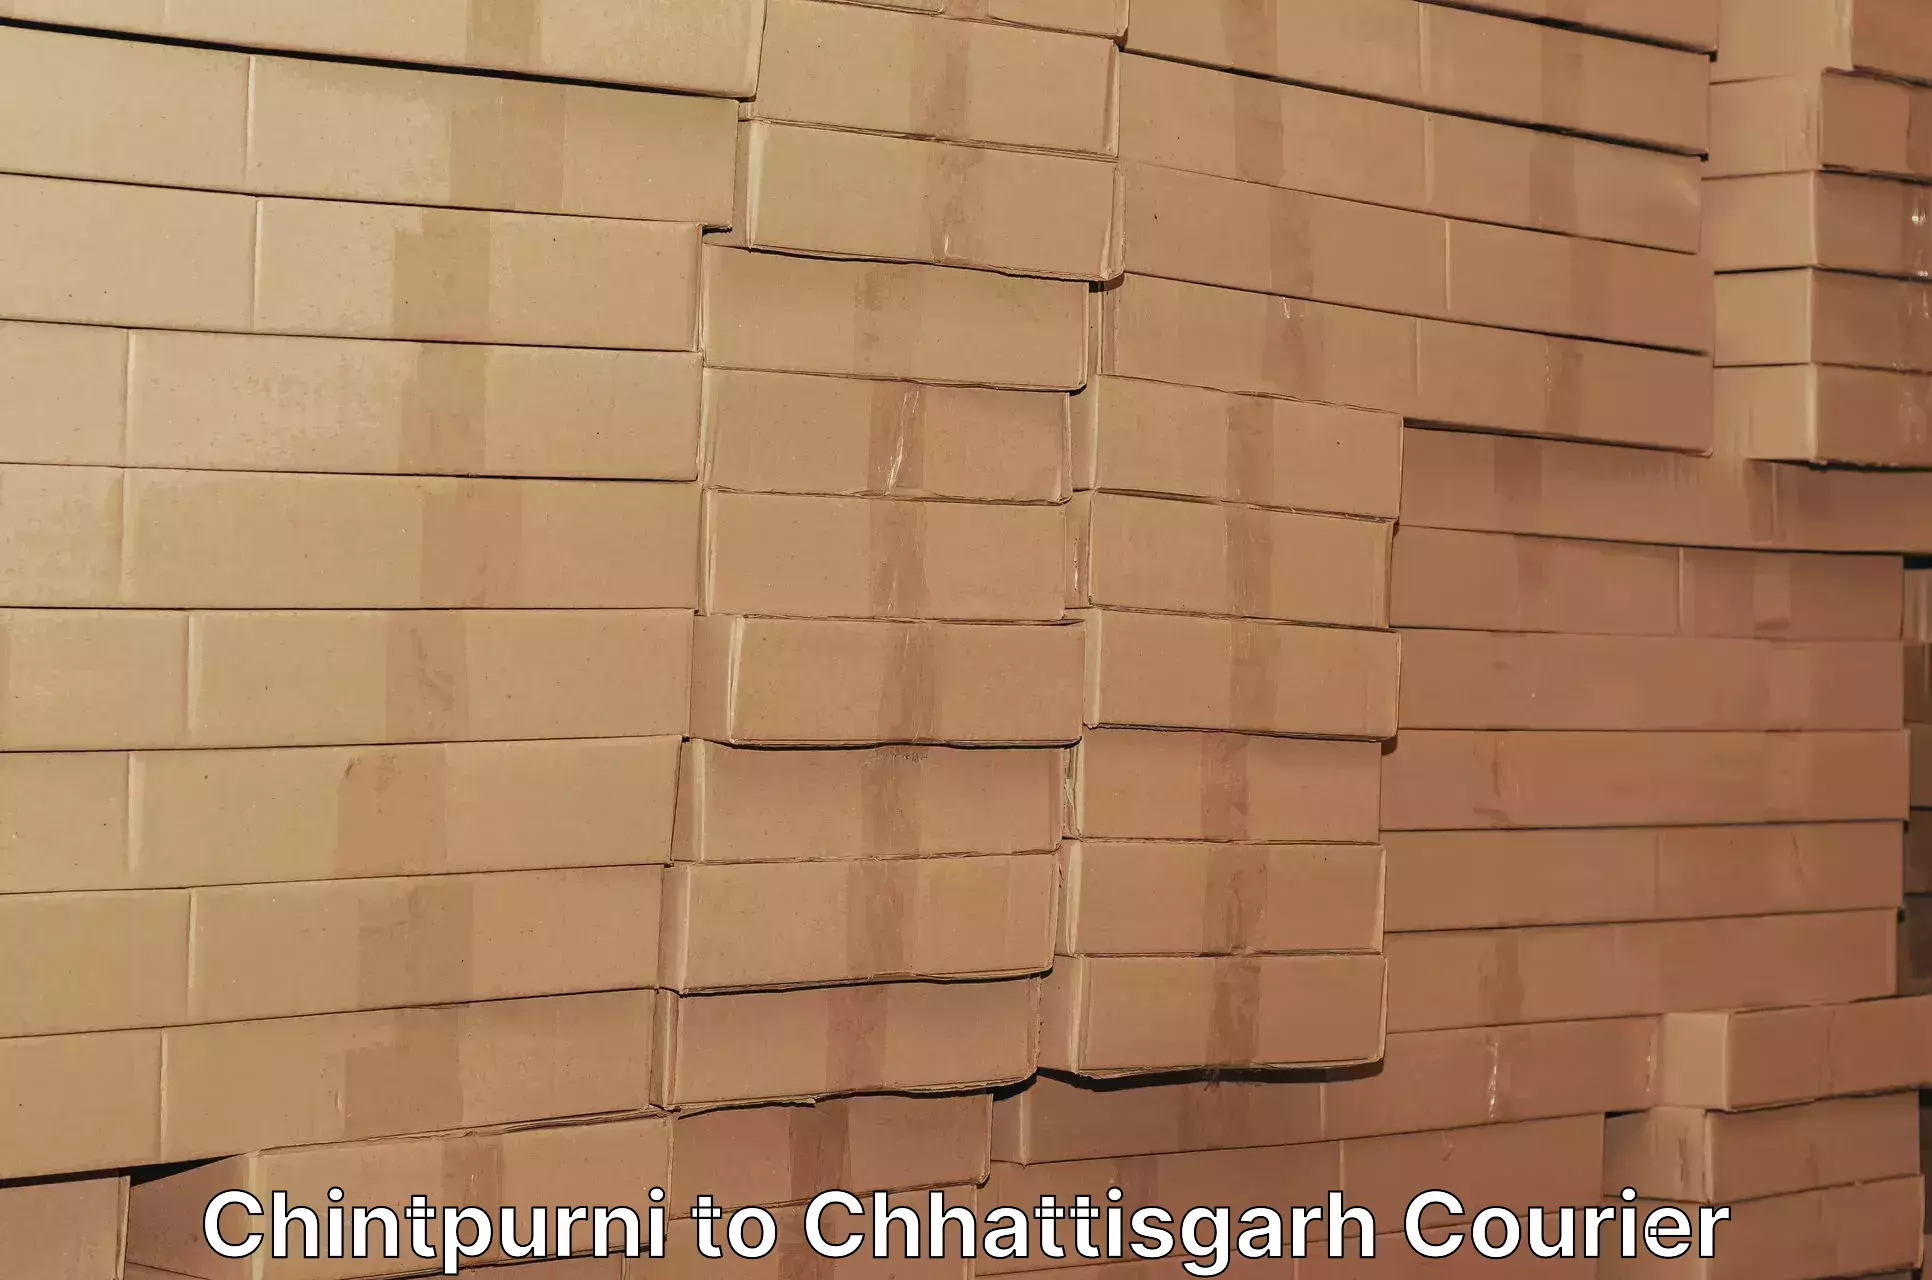 Urgent courier needs Chintpurni to Jaijaipur